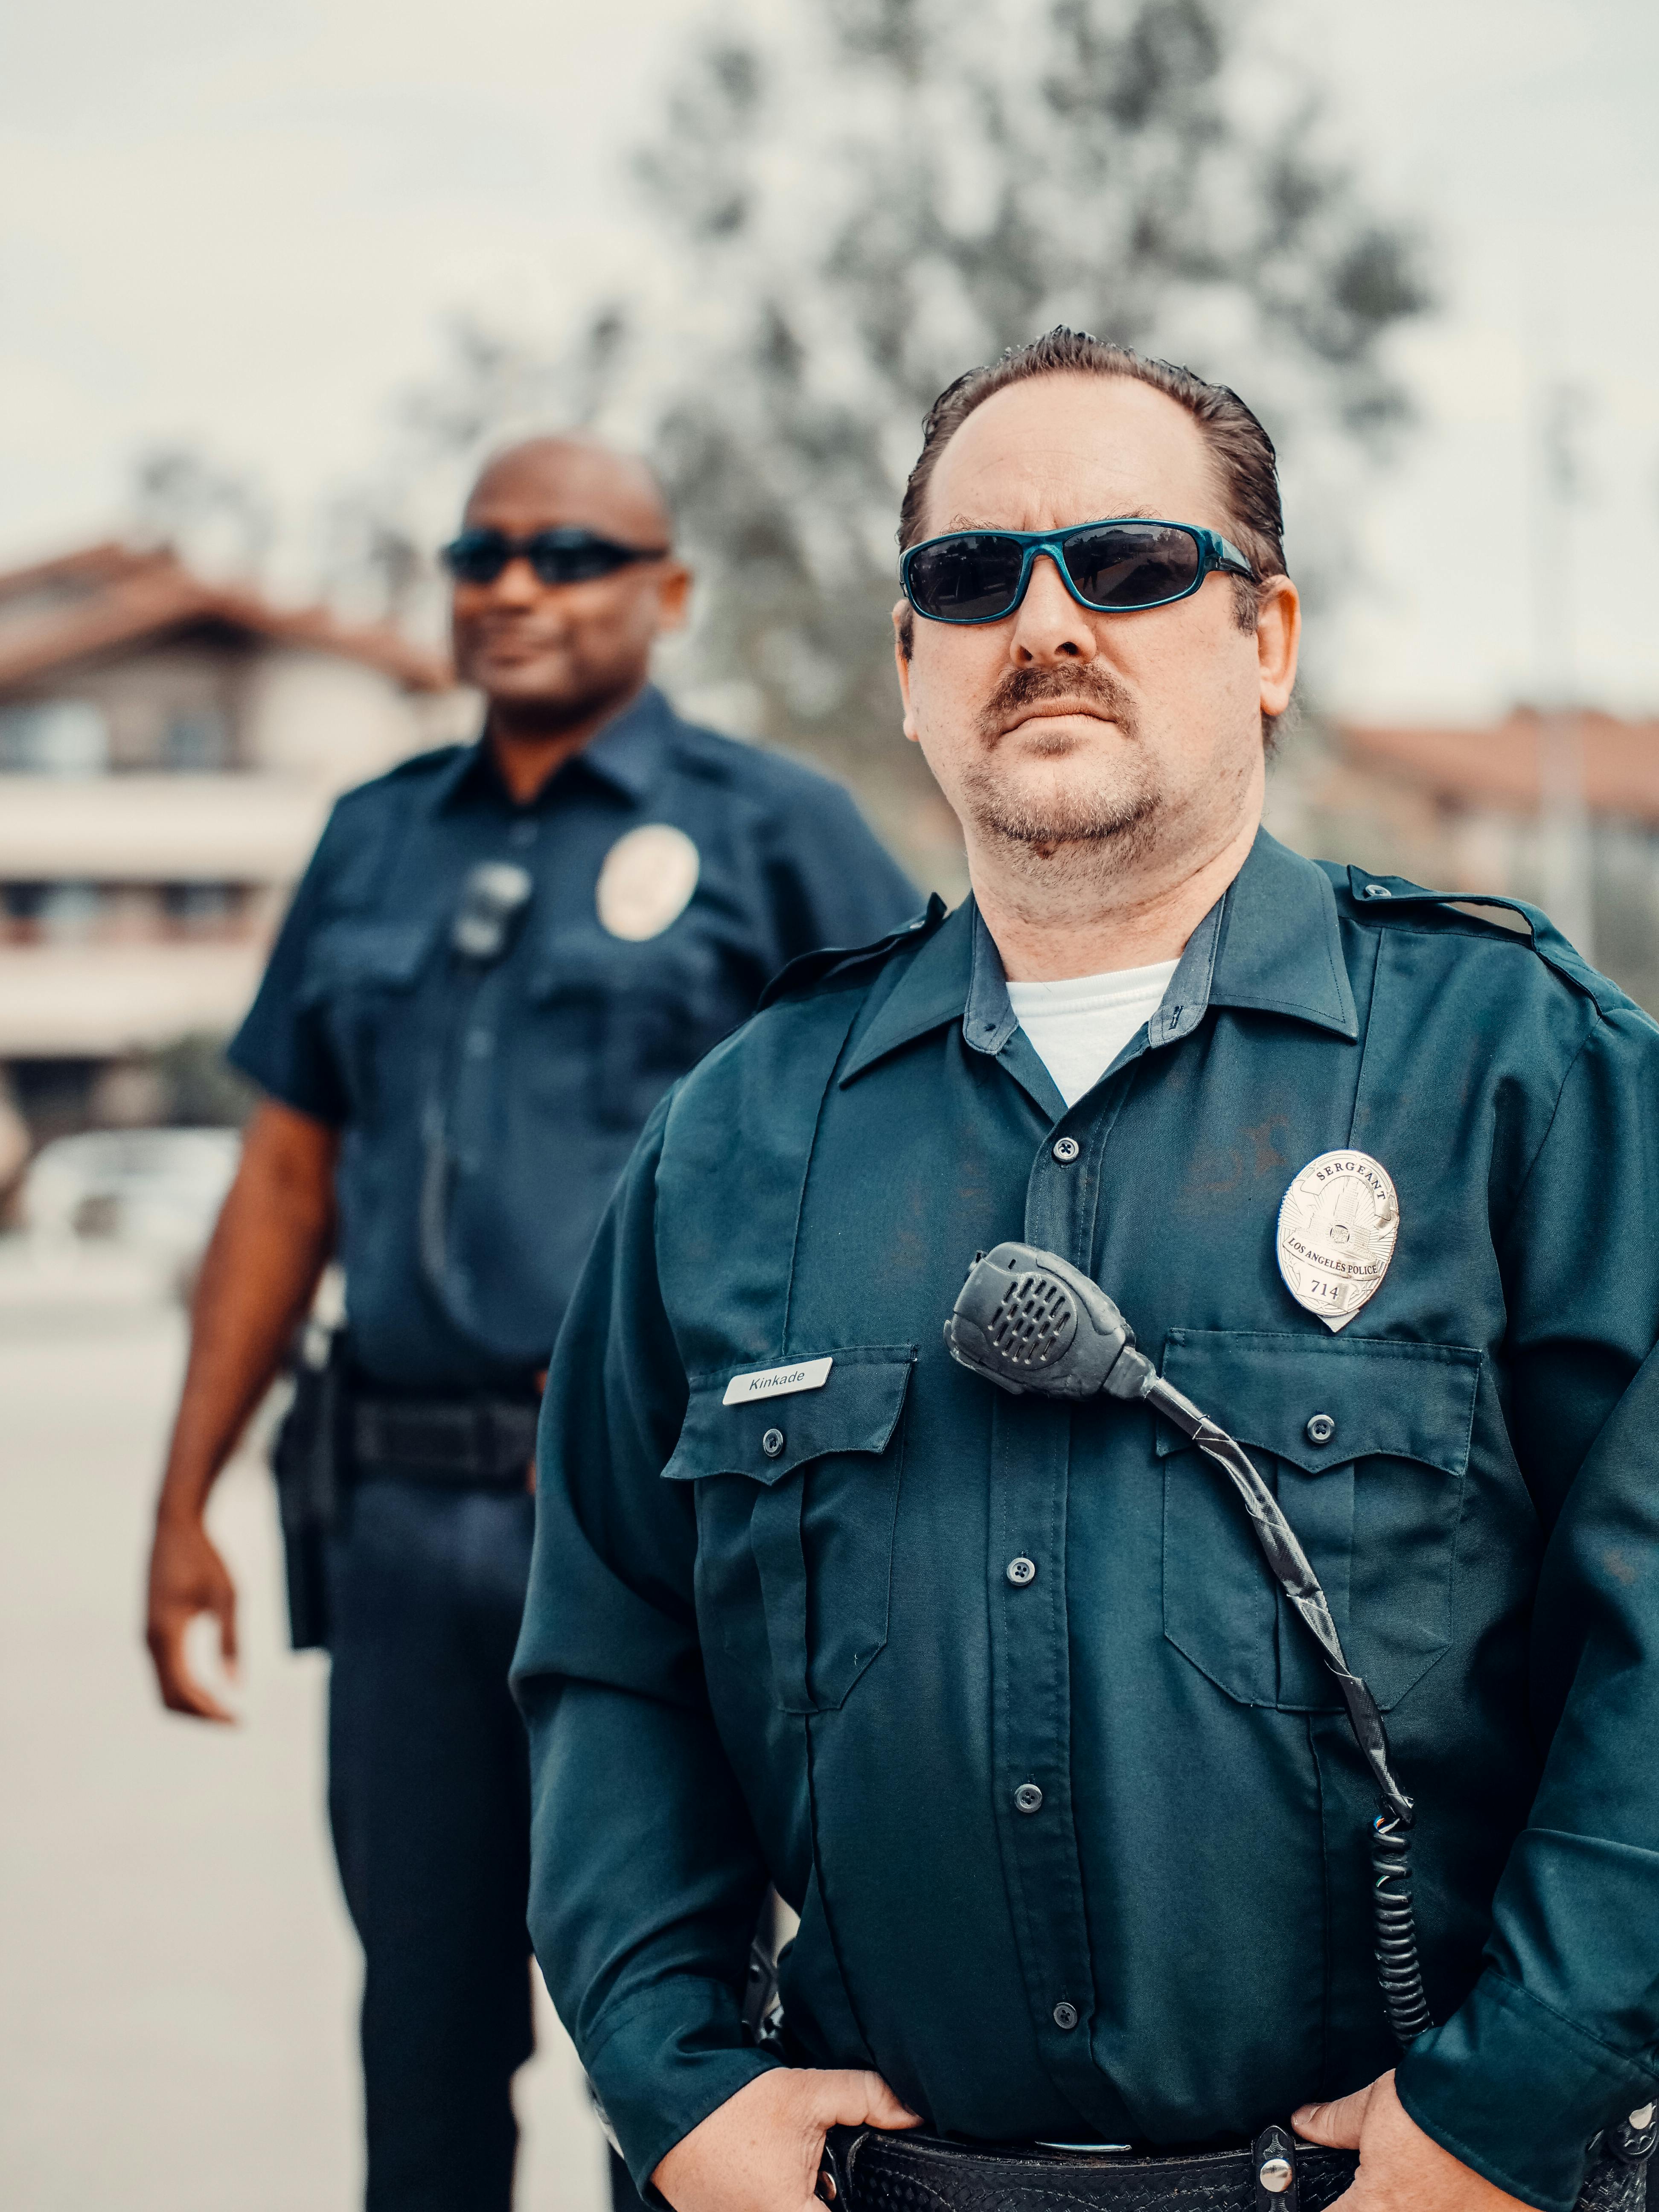 Un policier à l'air sombre se tenant derrière un collègue | Source : Pexels